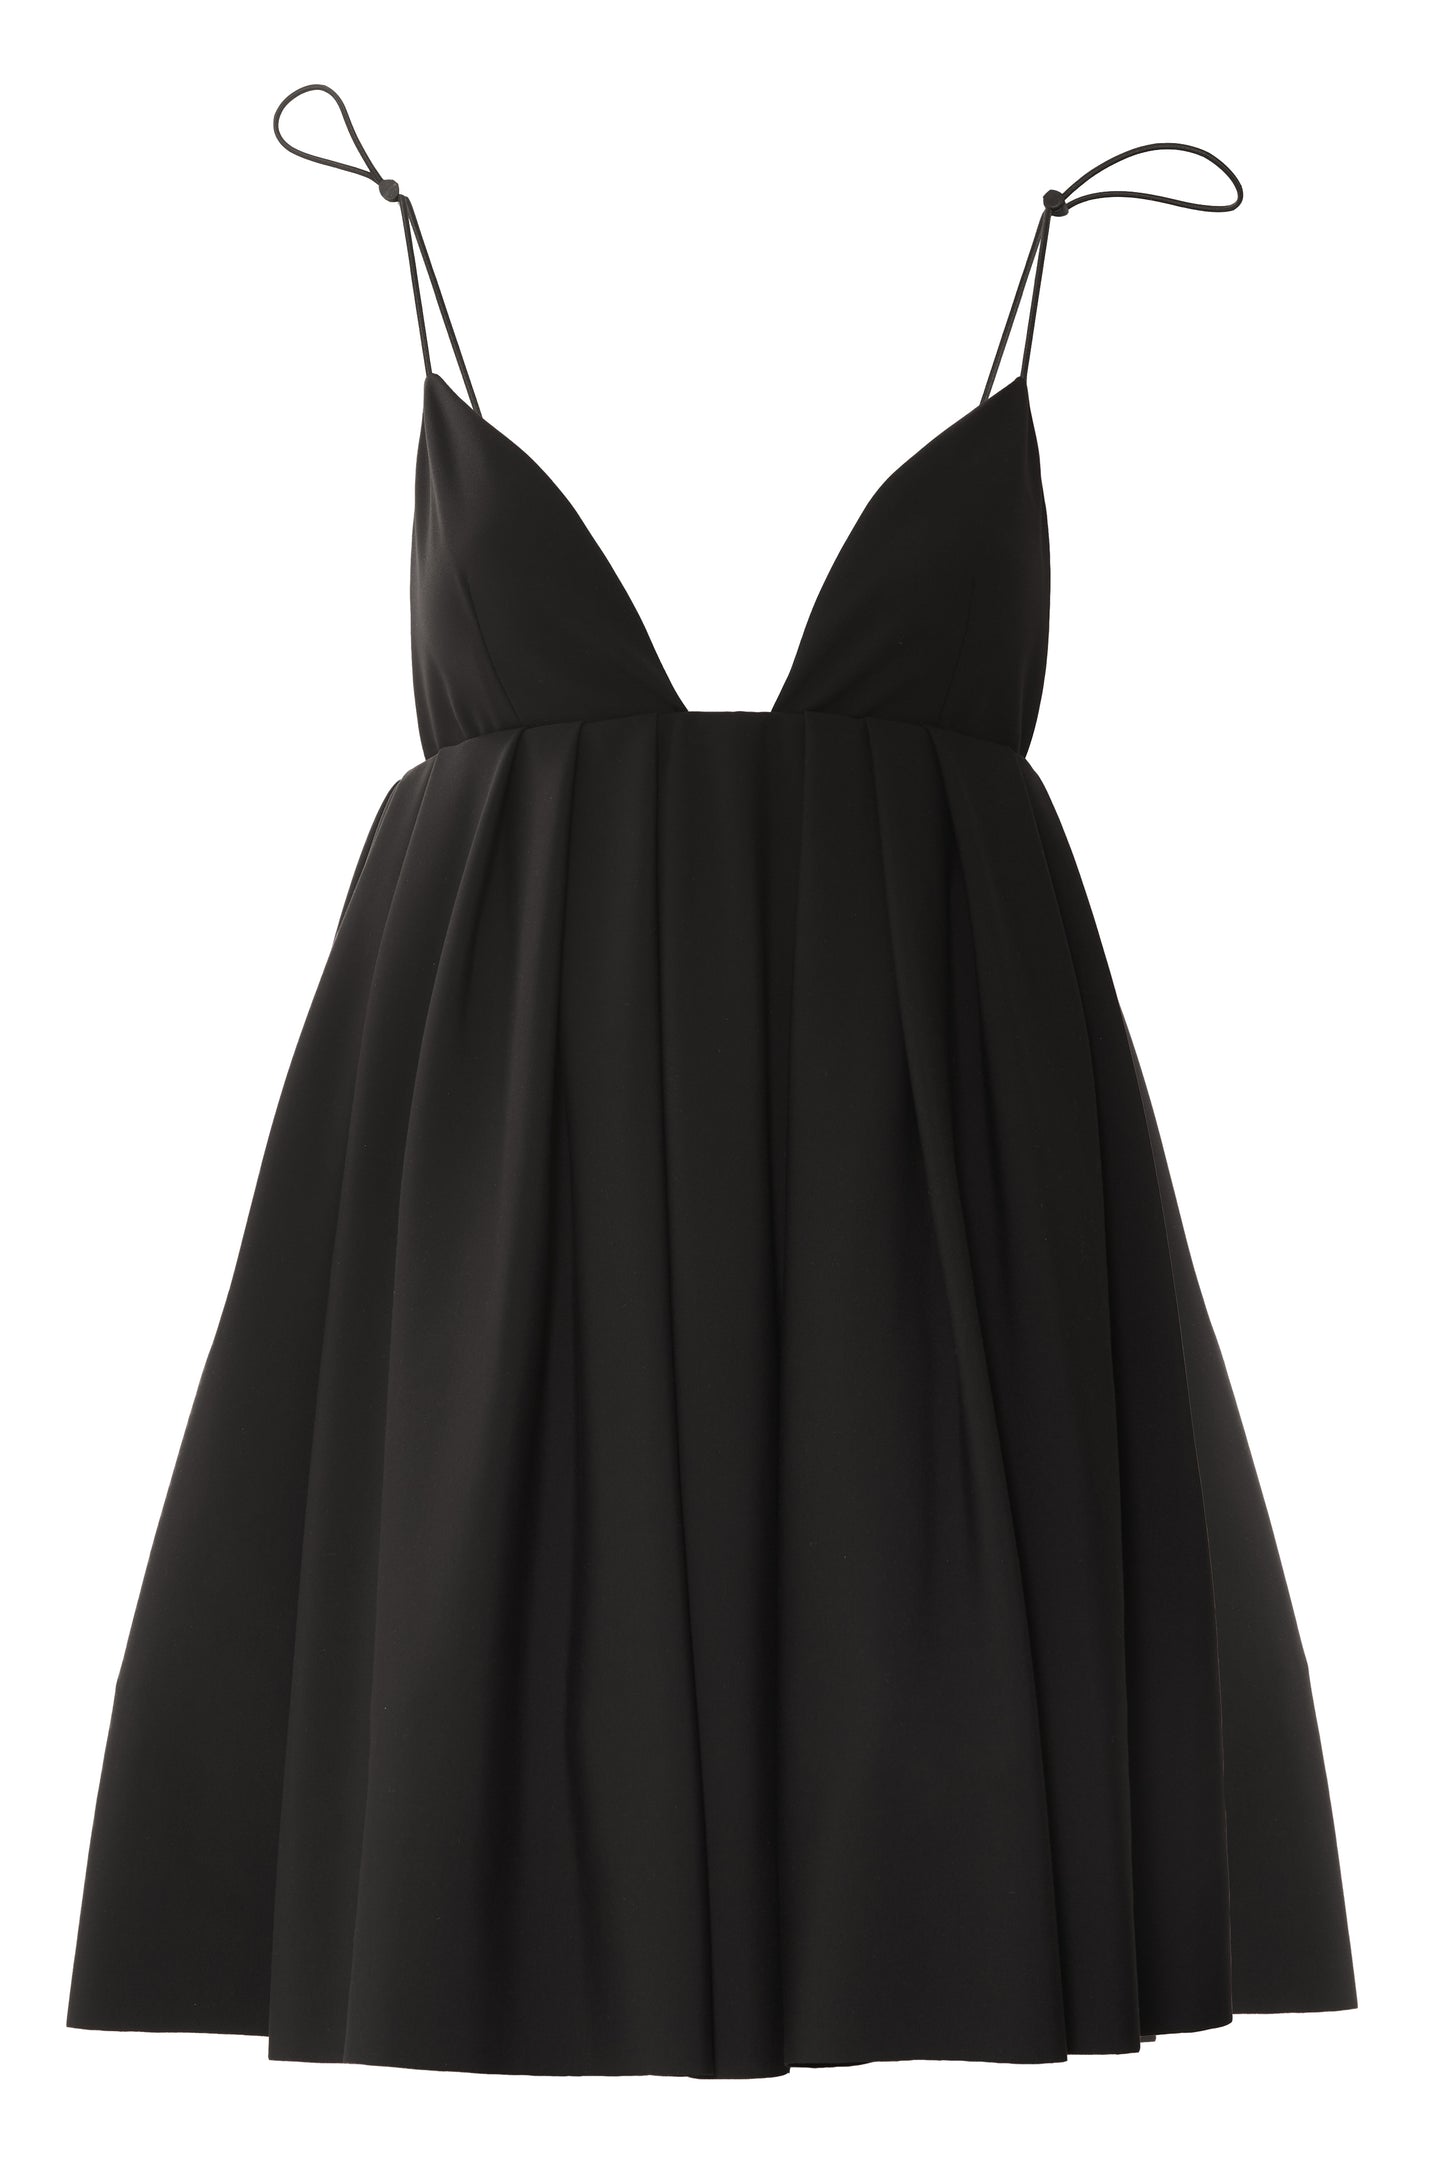 Structured black short dress